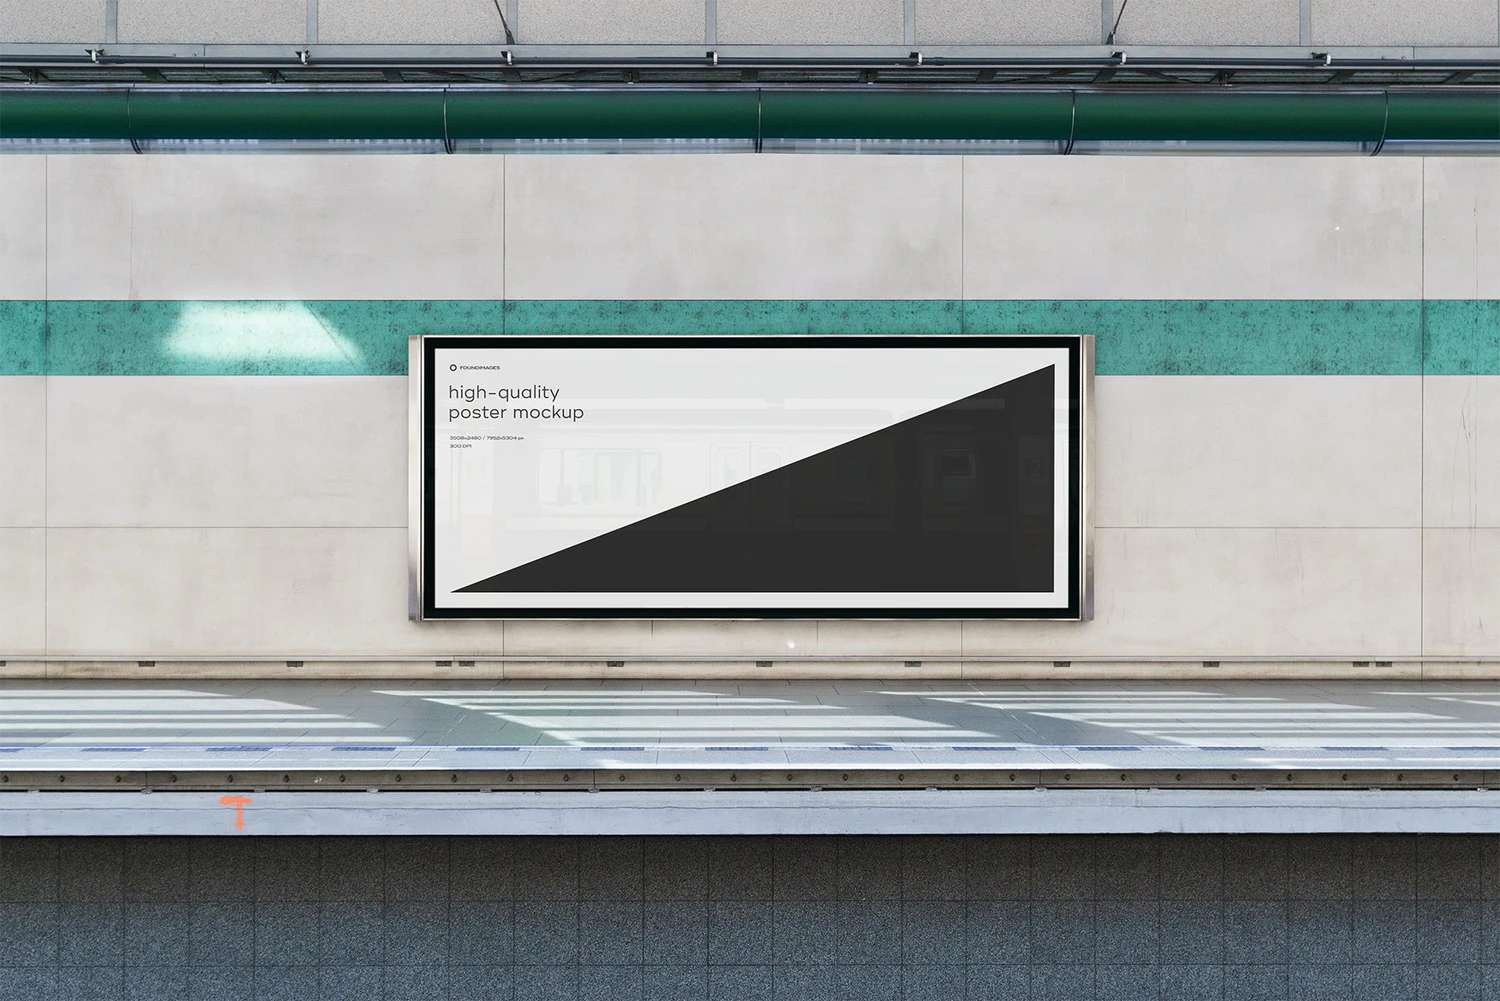 3243 60款地铁车厢海报广告牌灯箱导视设计作品贴图ps样机国外素材模板 Subway Poster Mockup Bundle Metro